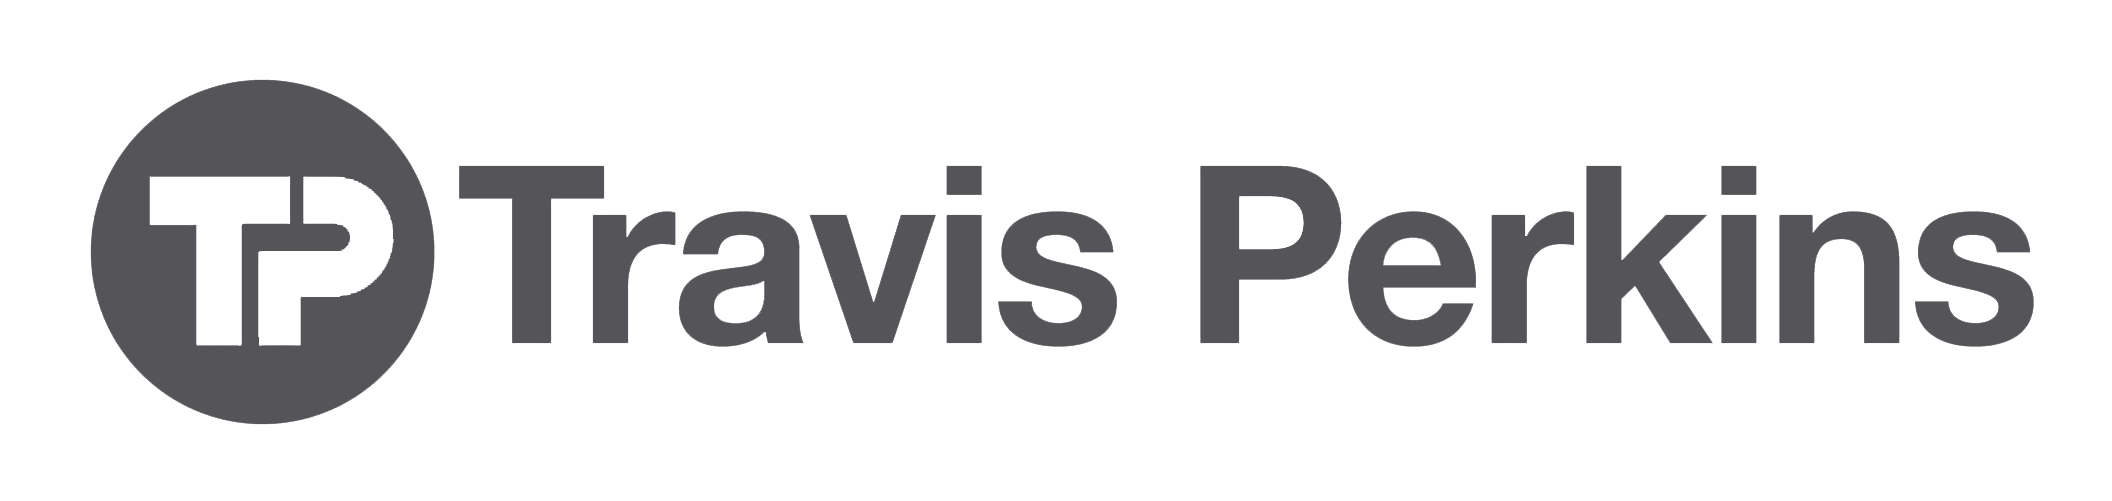 TravisPerkins-logo